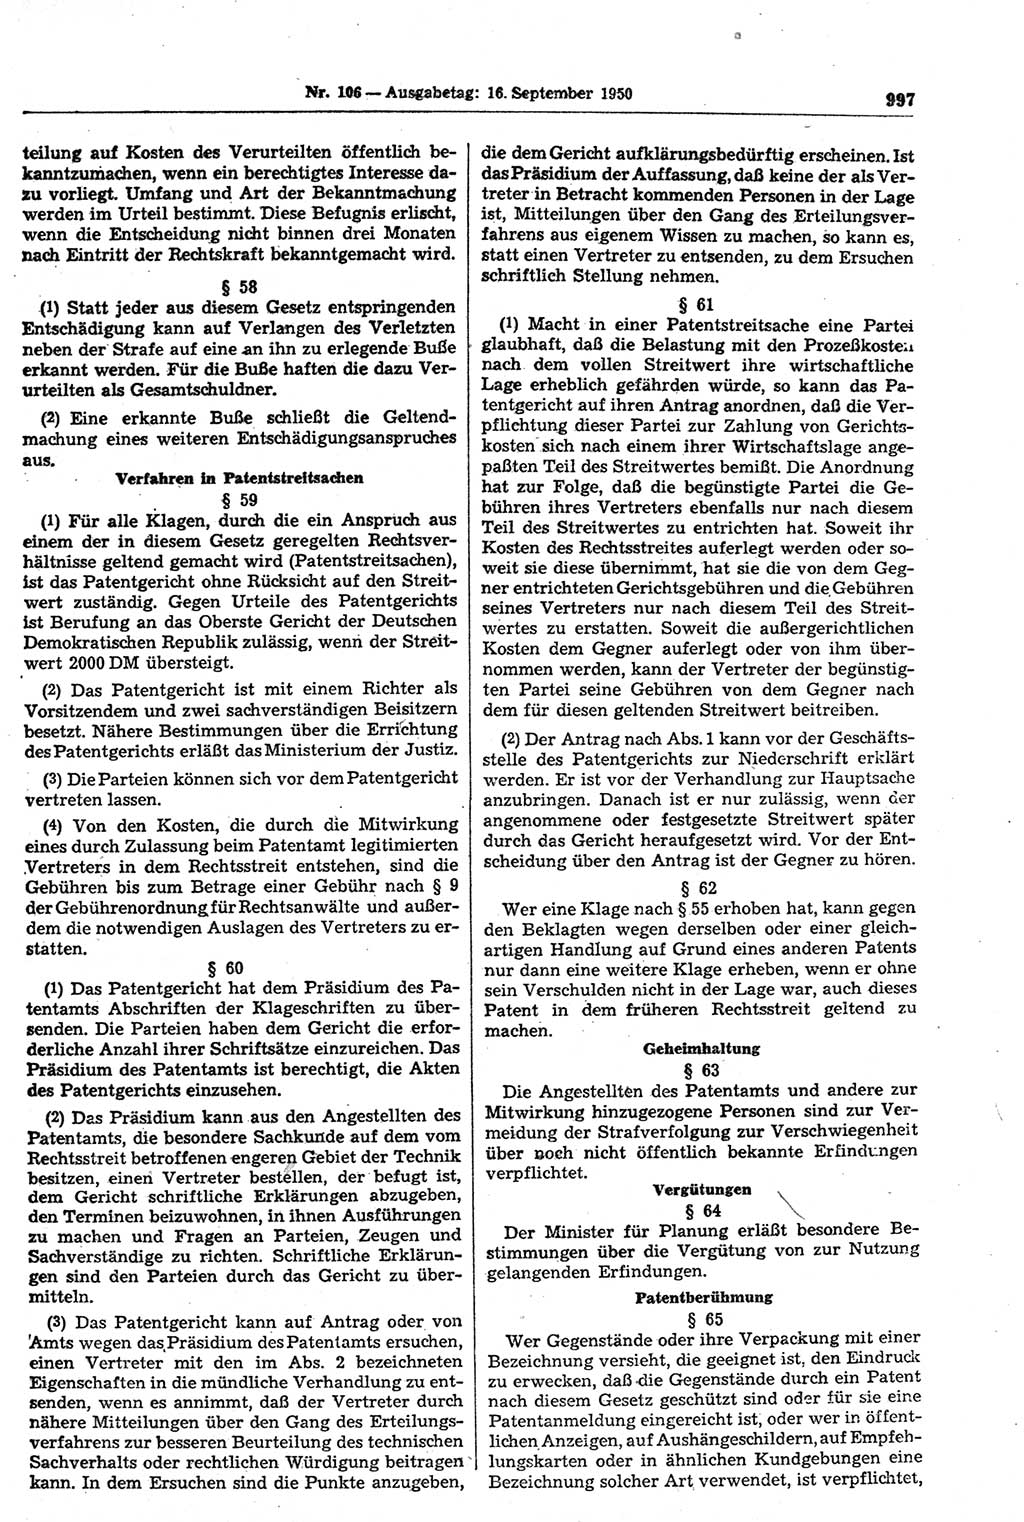 Gesetzblatt (GBl.) der Deutschen Demokratischen Republik (DDR) 1950, Seite 997 (GBl. DDR 1950, S. 997)